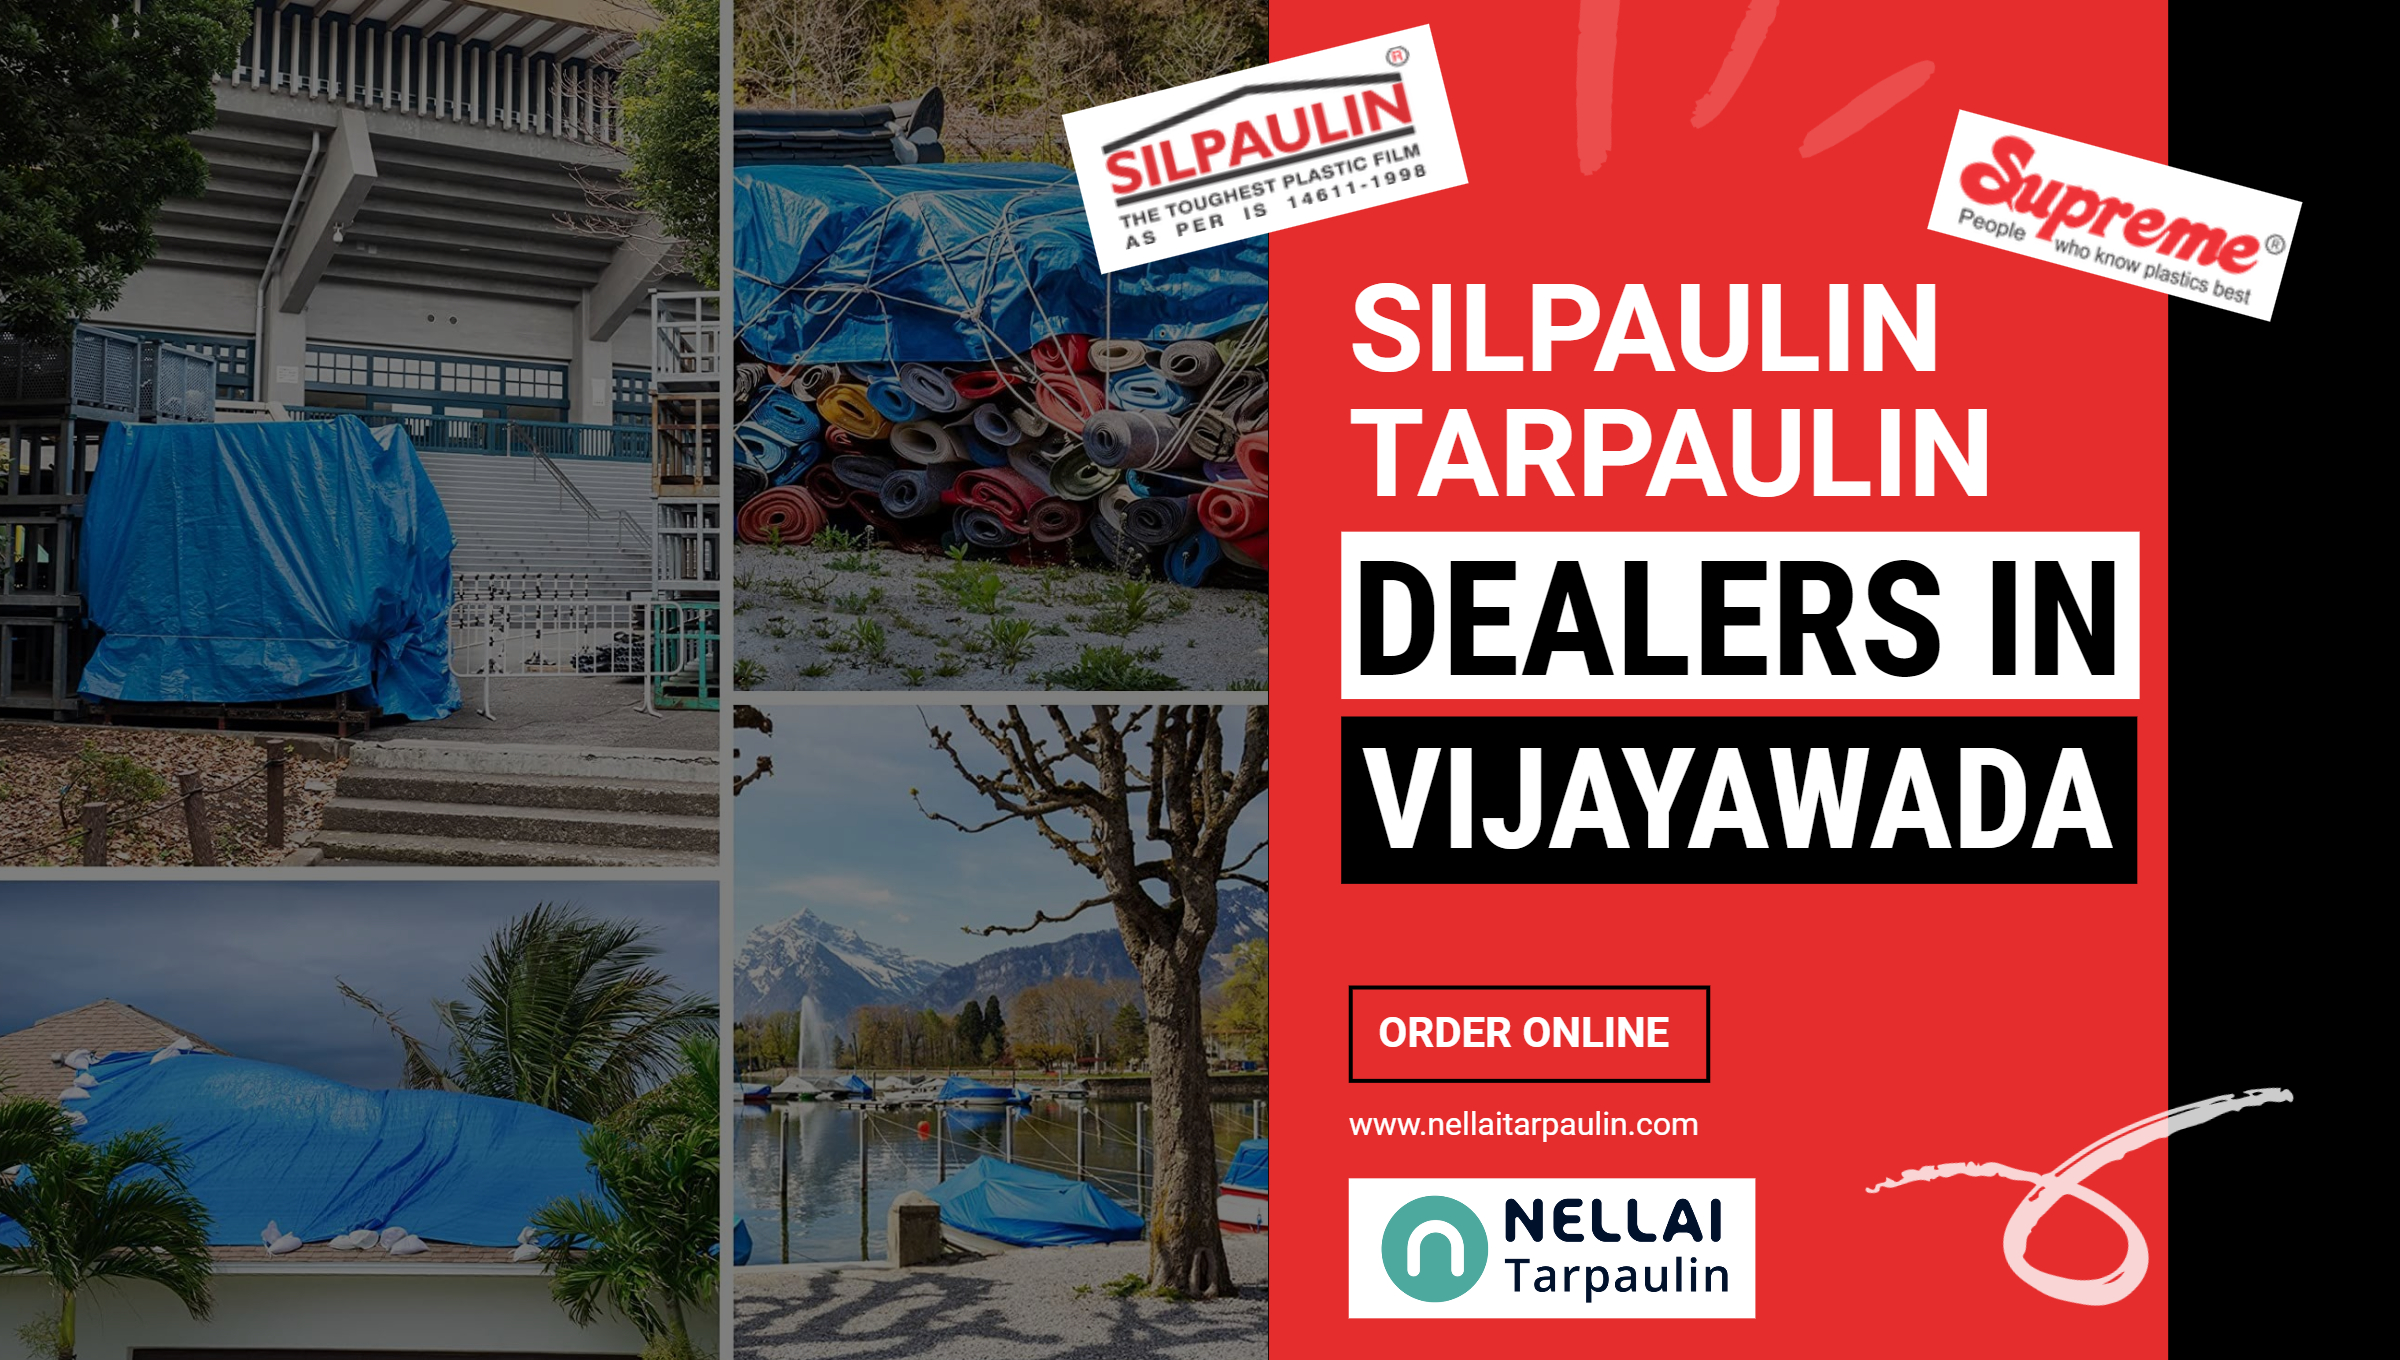 Silpaulin Tarpaulin Dealers in Vijayawada